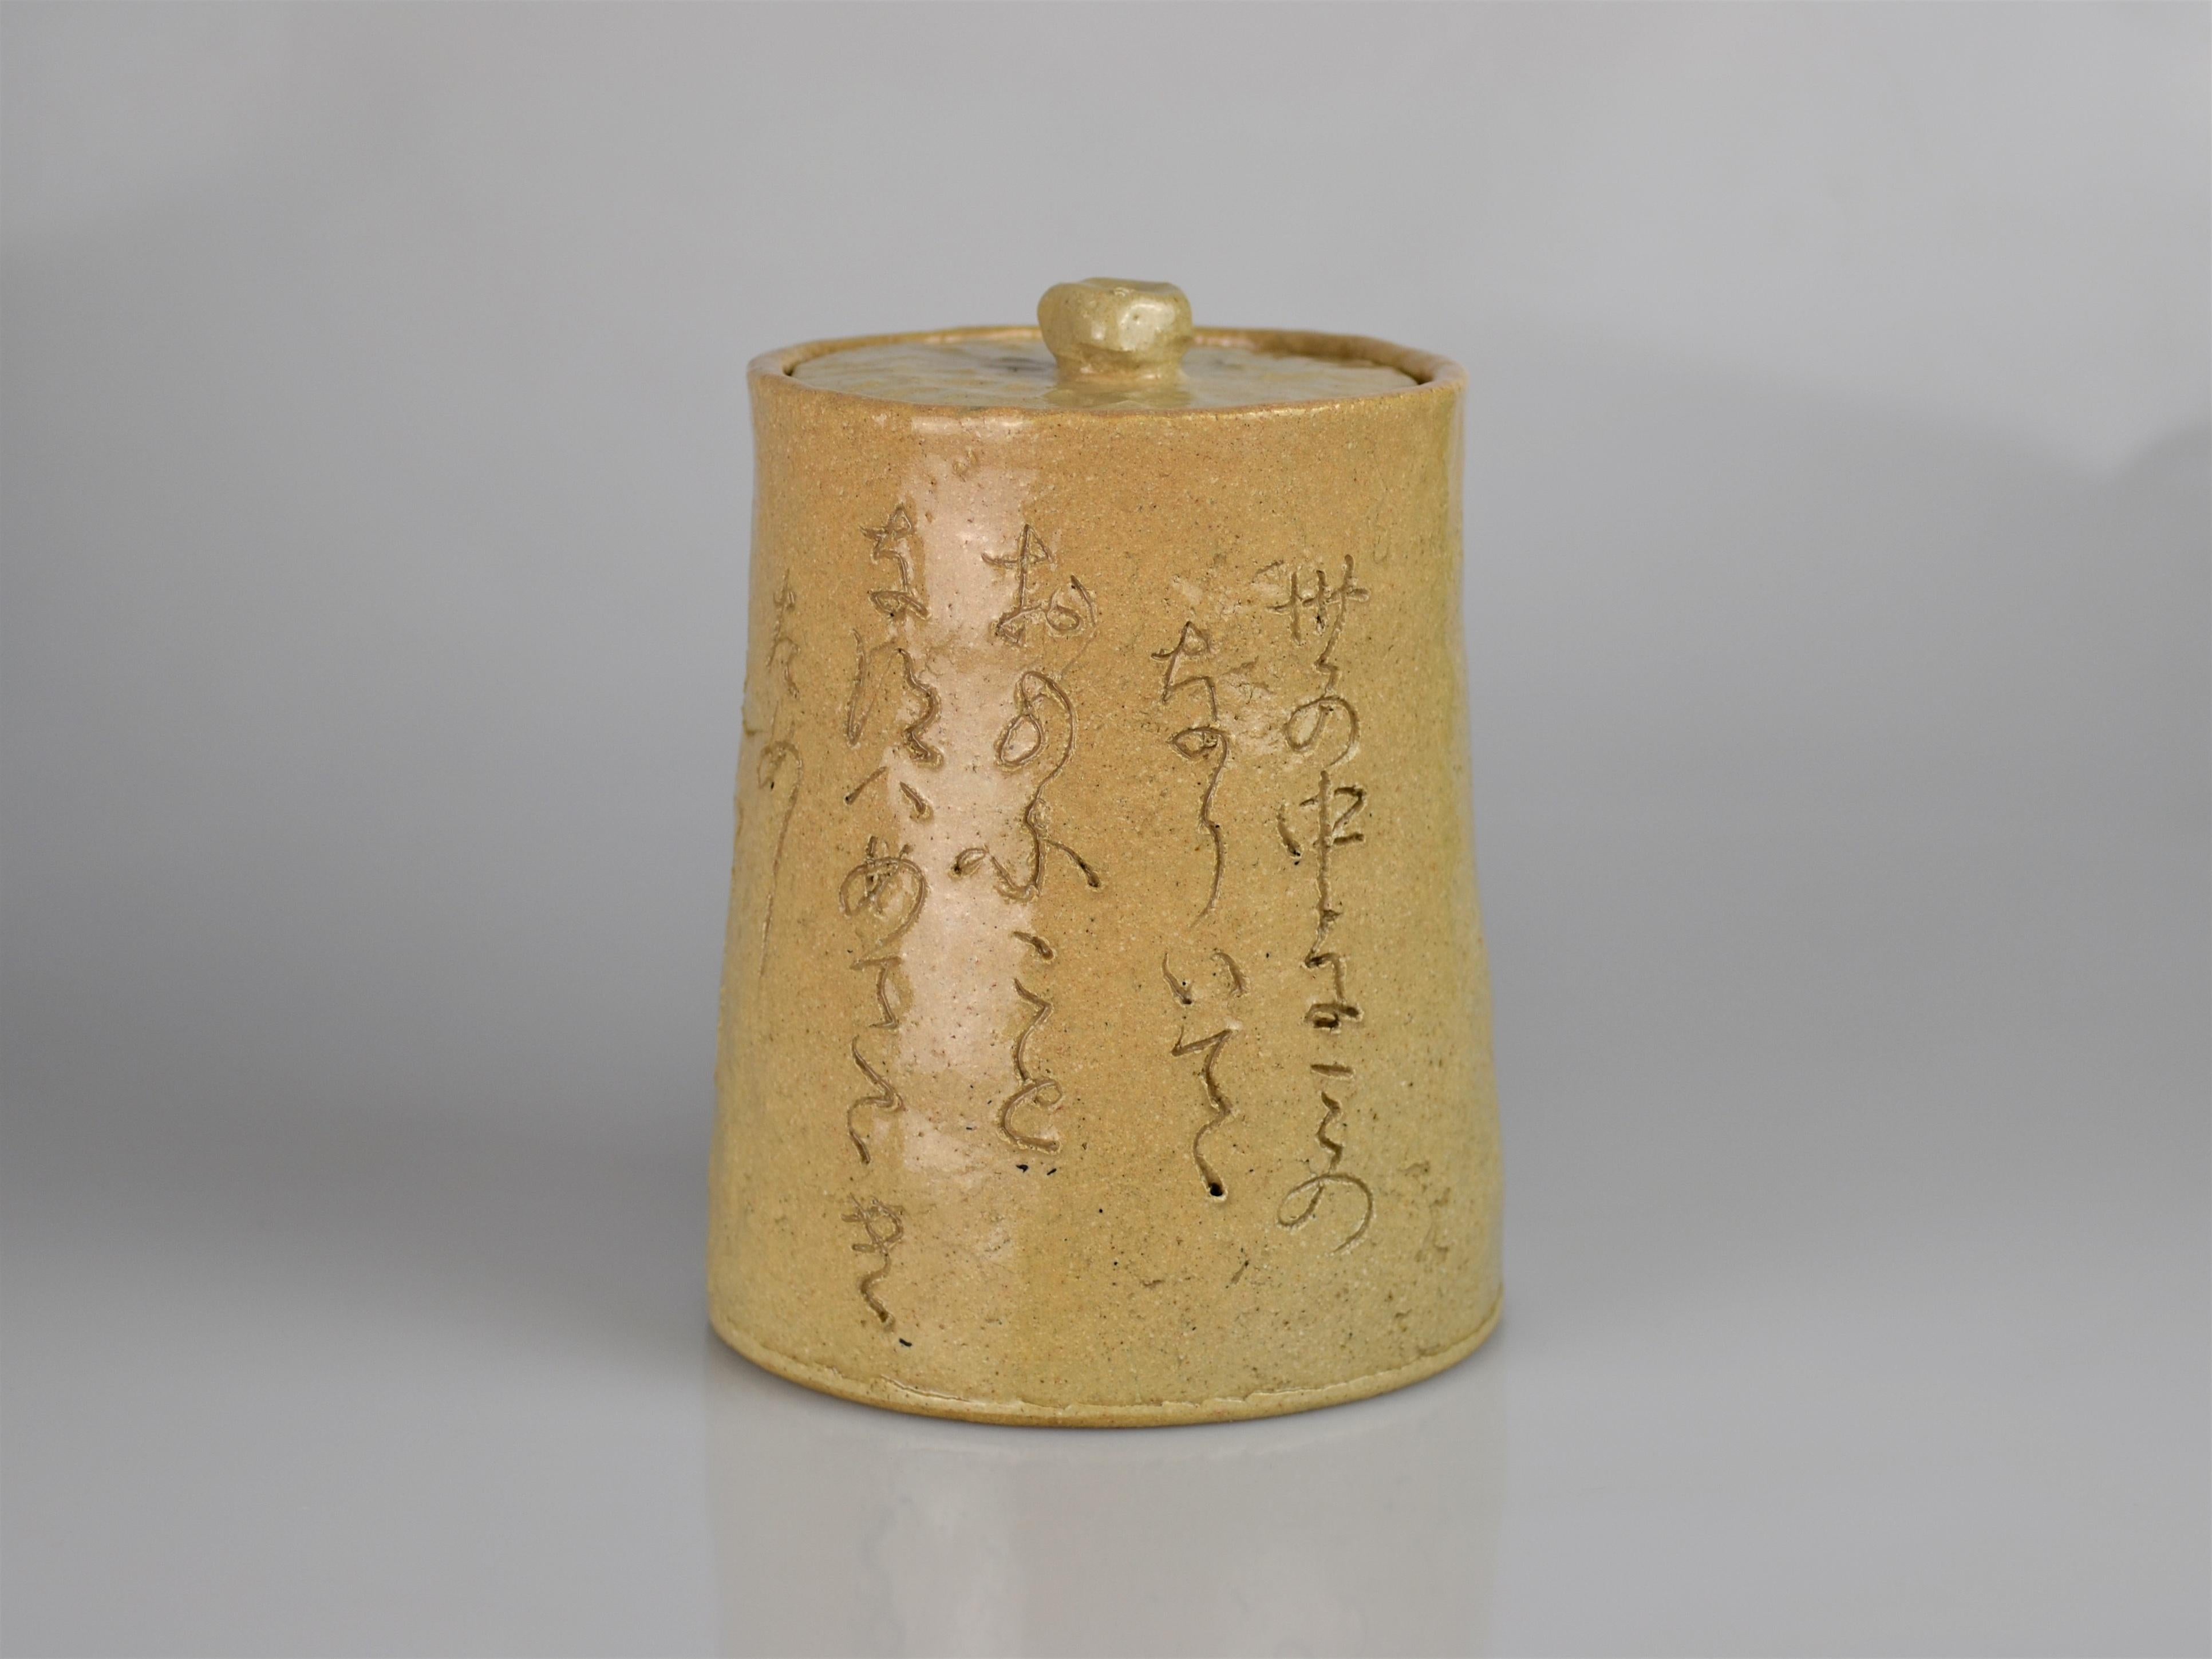 Otagaki Rengetsu (1791-1875) ist wahrscheinlich die berühmteste Dichterin des 19. Jahrhunderts und auch für ihre hervorragenden Fähigkeiten in Kalligraphie und Töpferei bekannt. Sie wurde als uneheliche Tochter eines Samurai aus der Familie der Todo